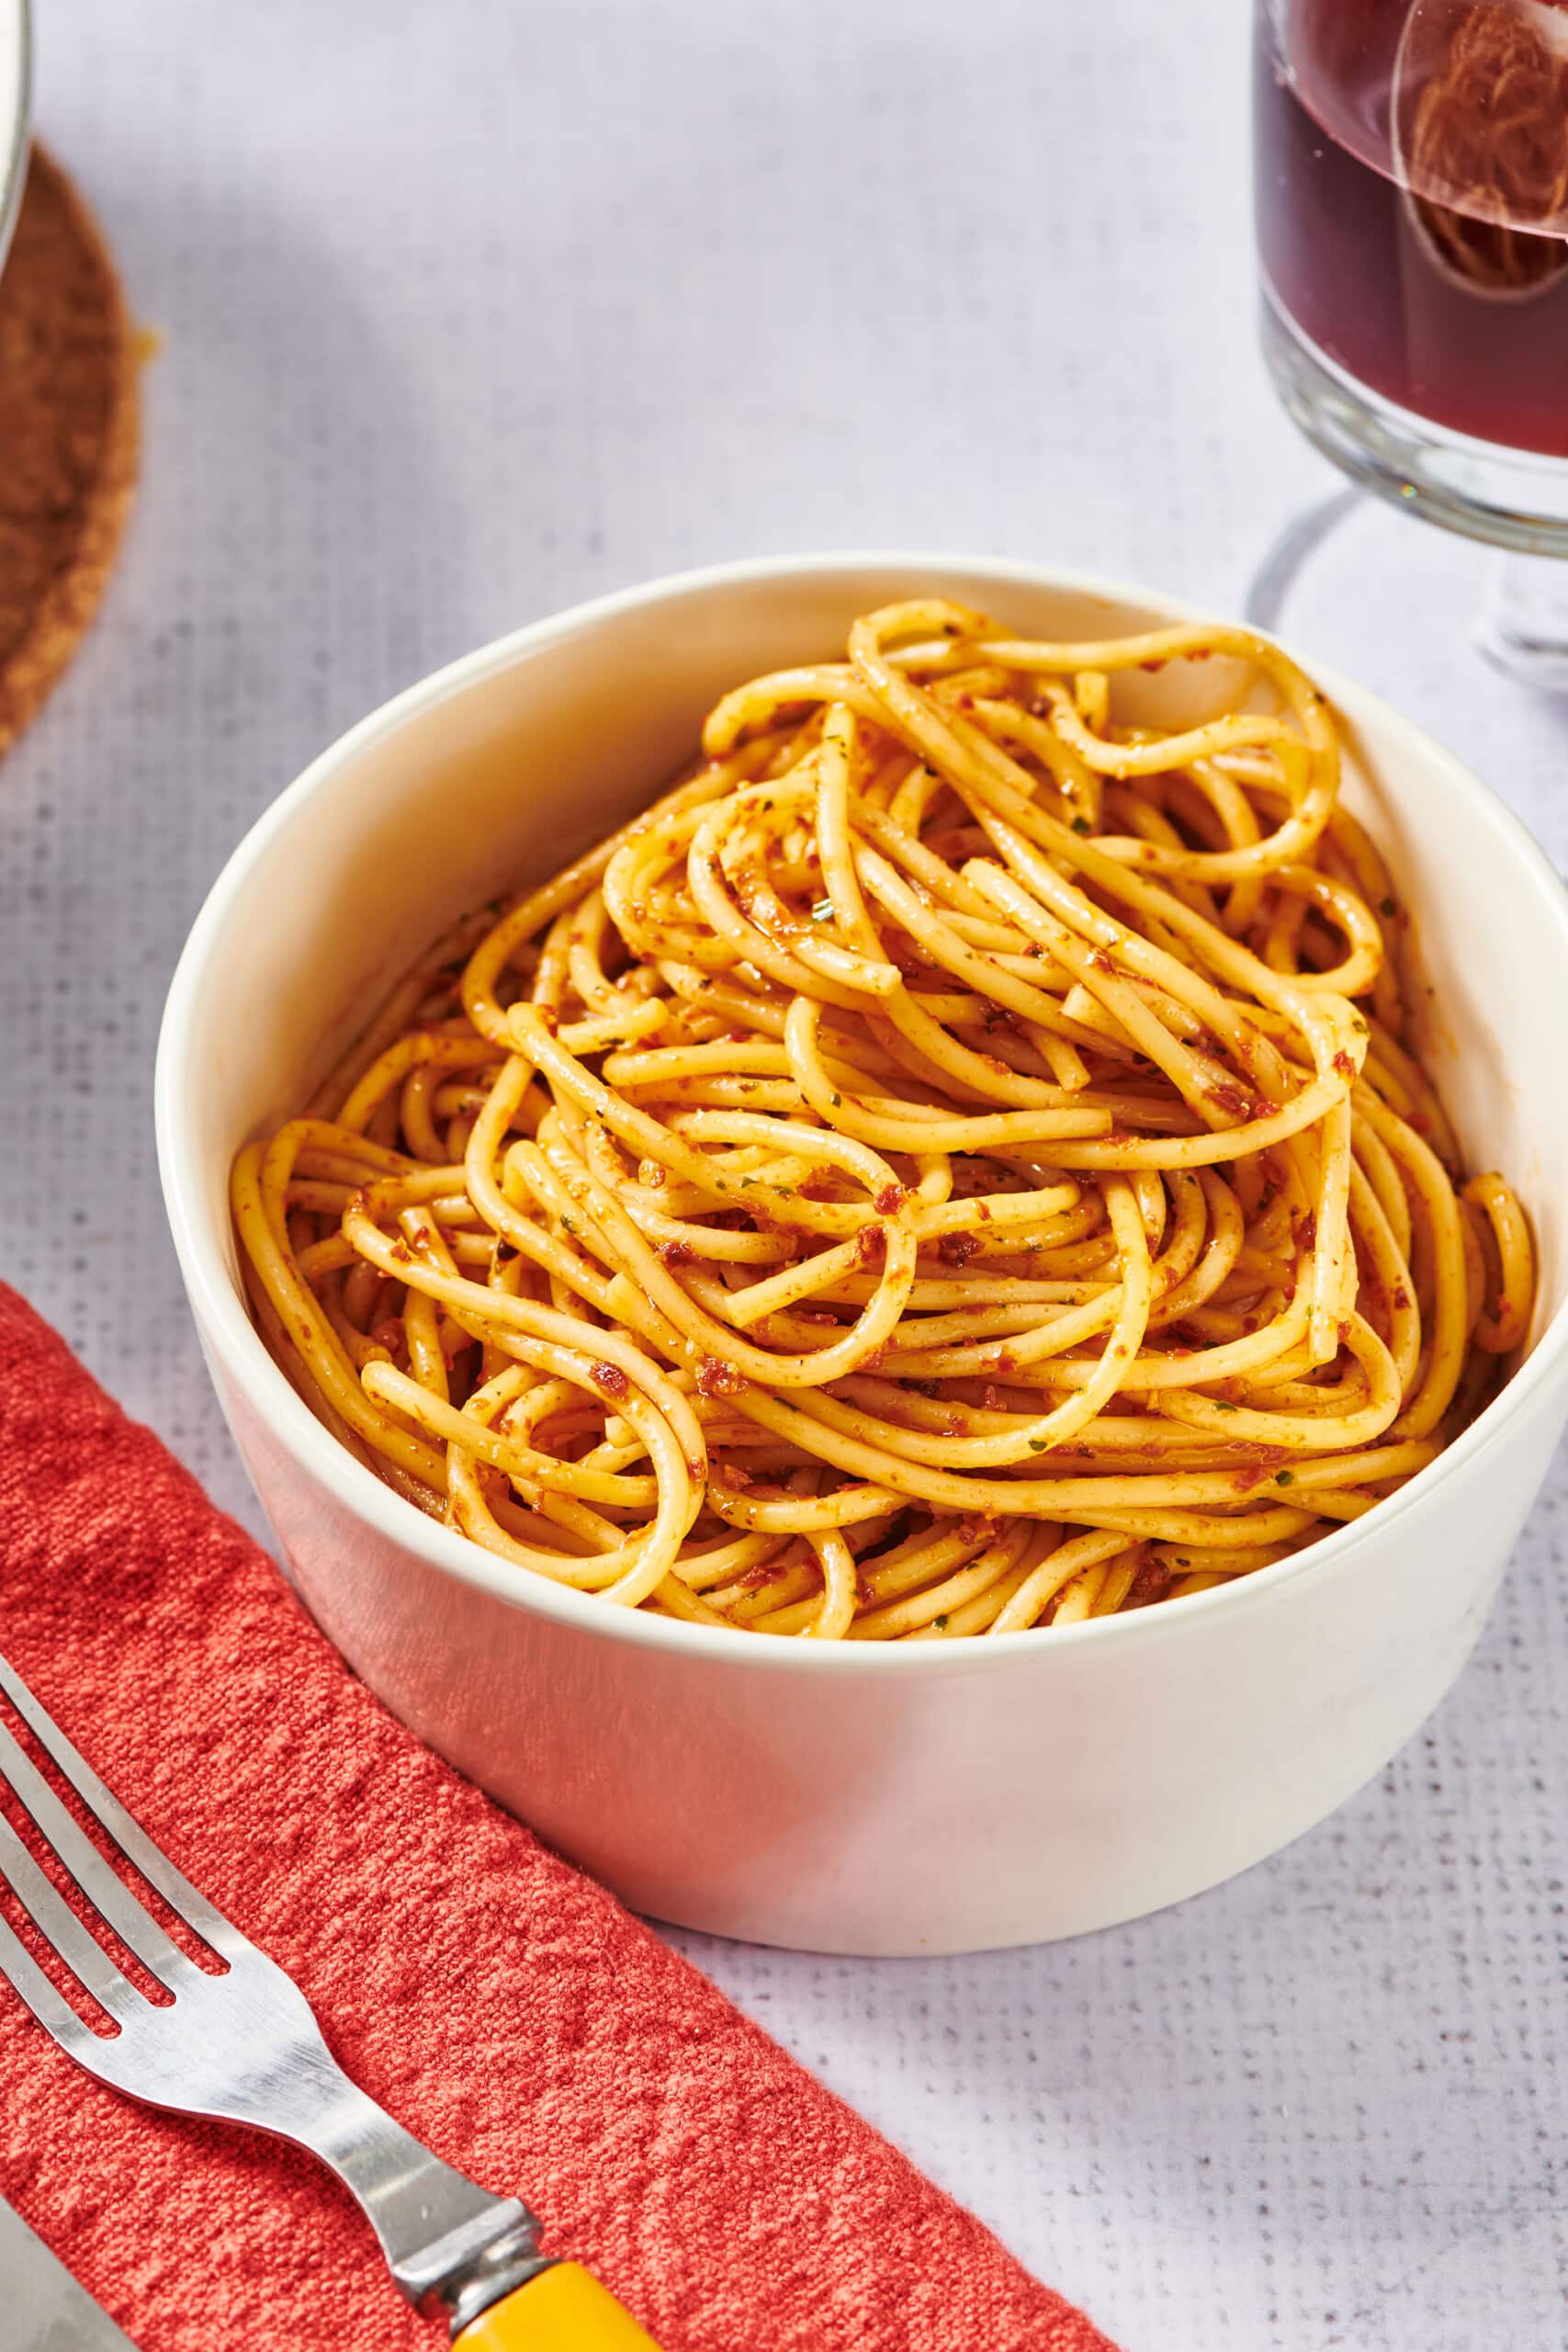 White bowl of sun-dried tomato pesto with spaghetti